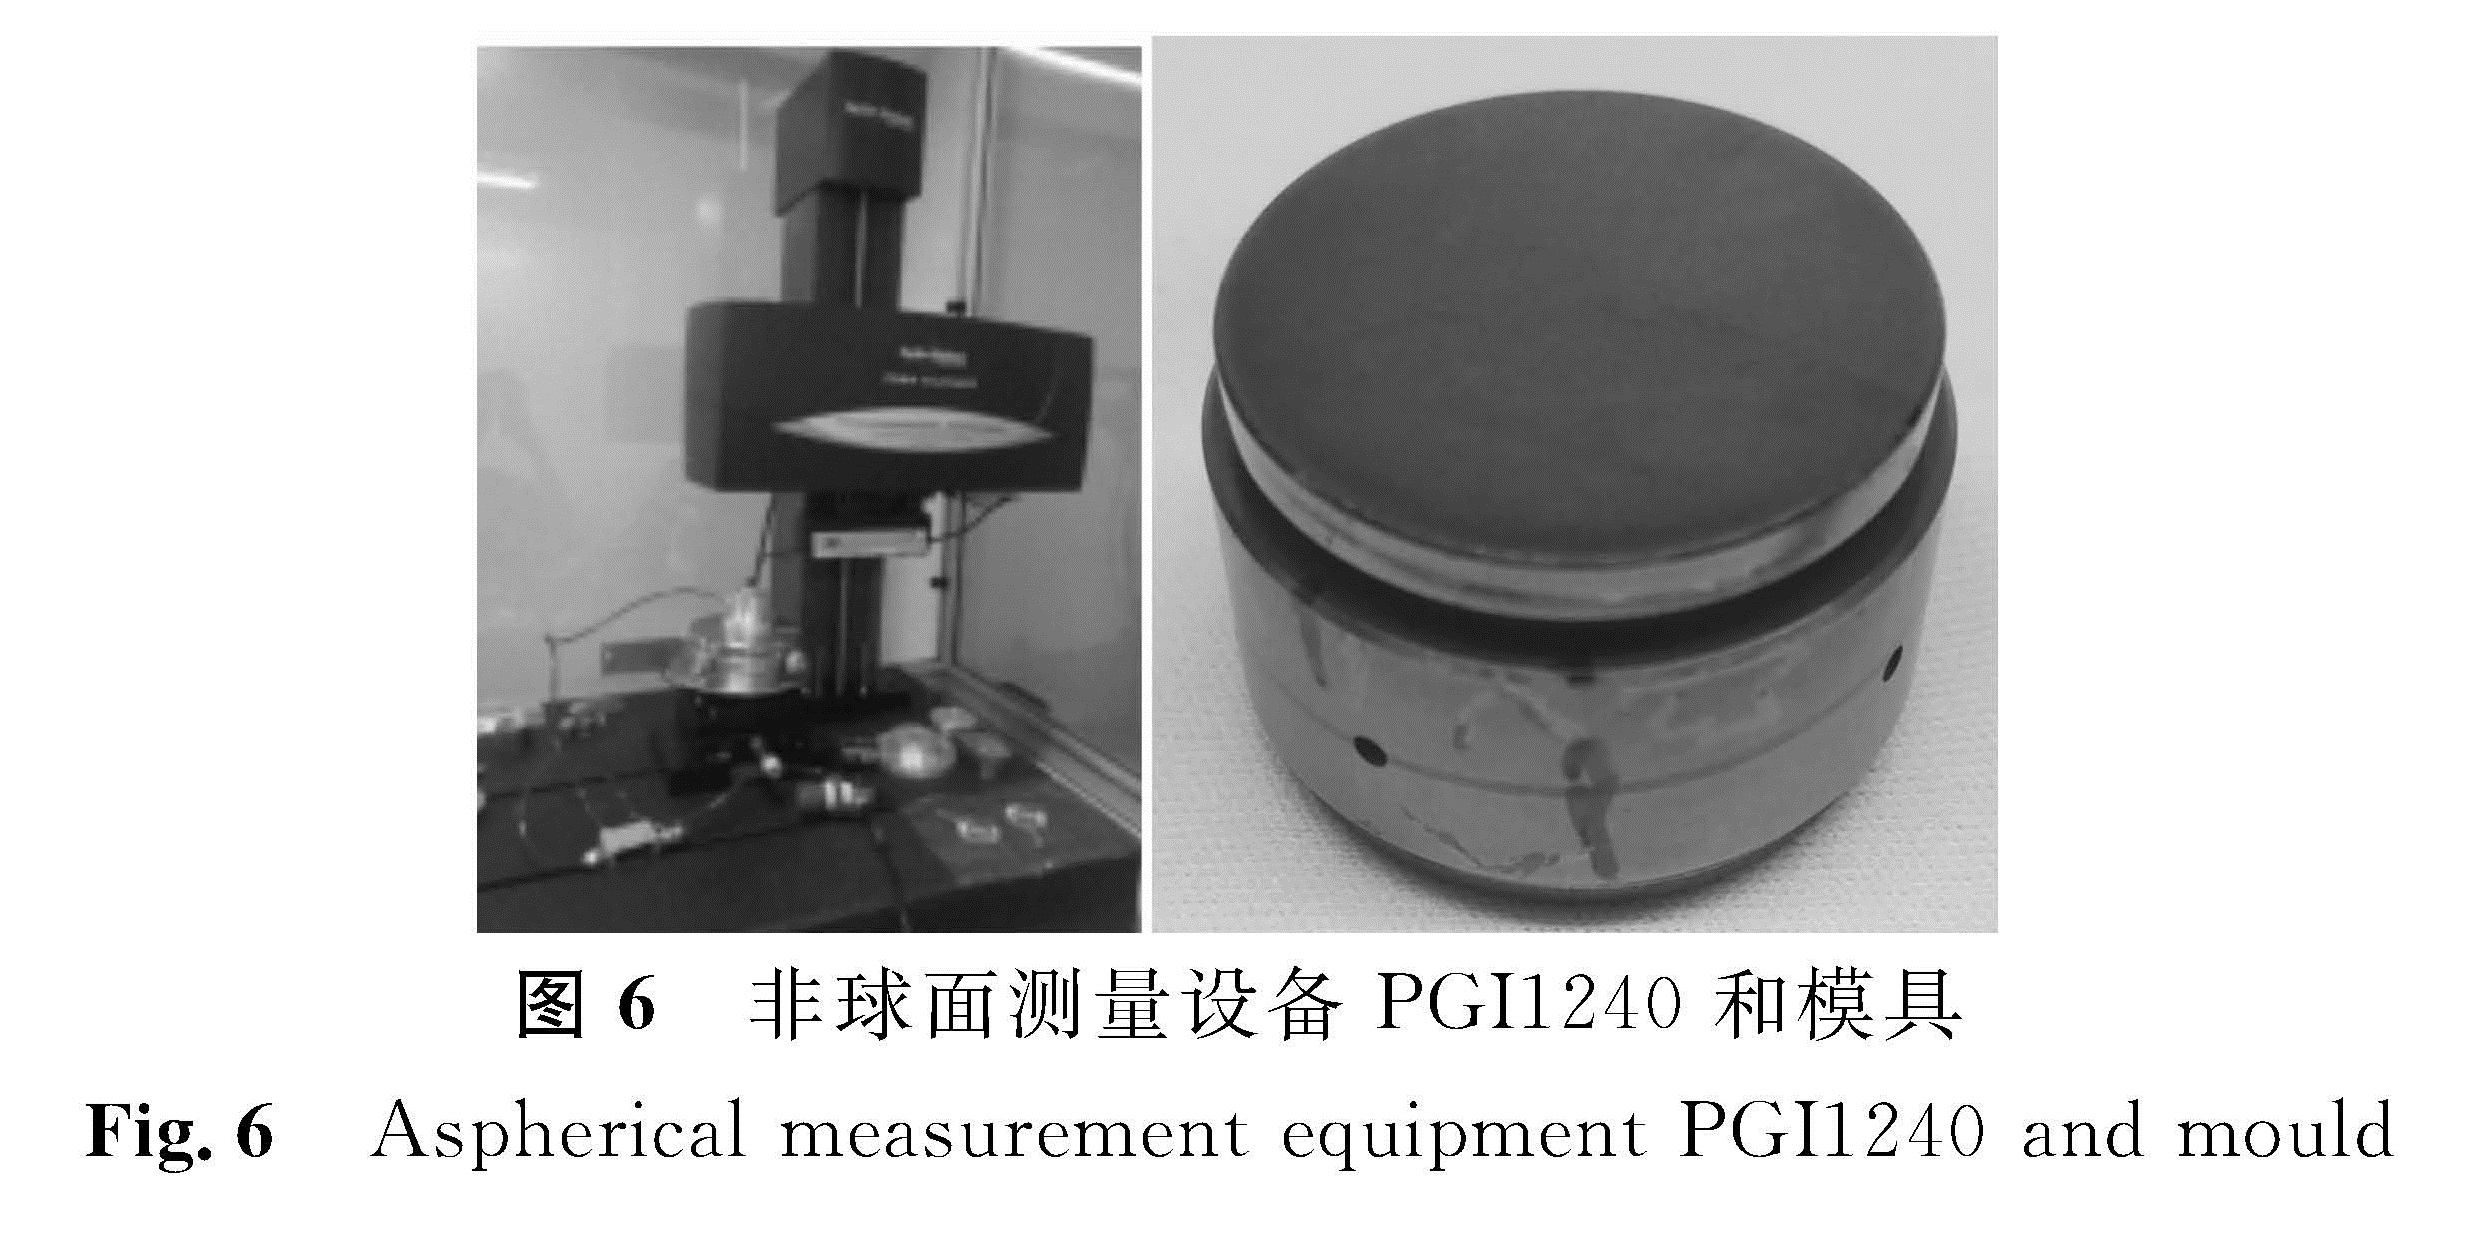 图6 非球面测量设备PGI1240和模具<br/>Fig.6 Aspherical measurement equipment PGI1240 and mould